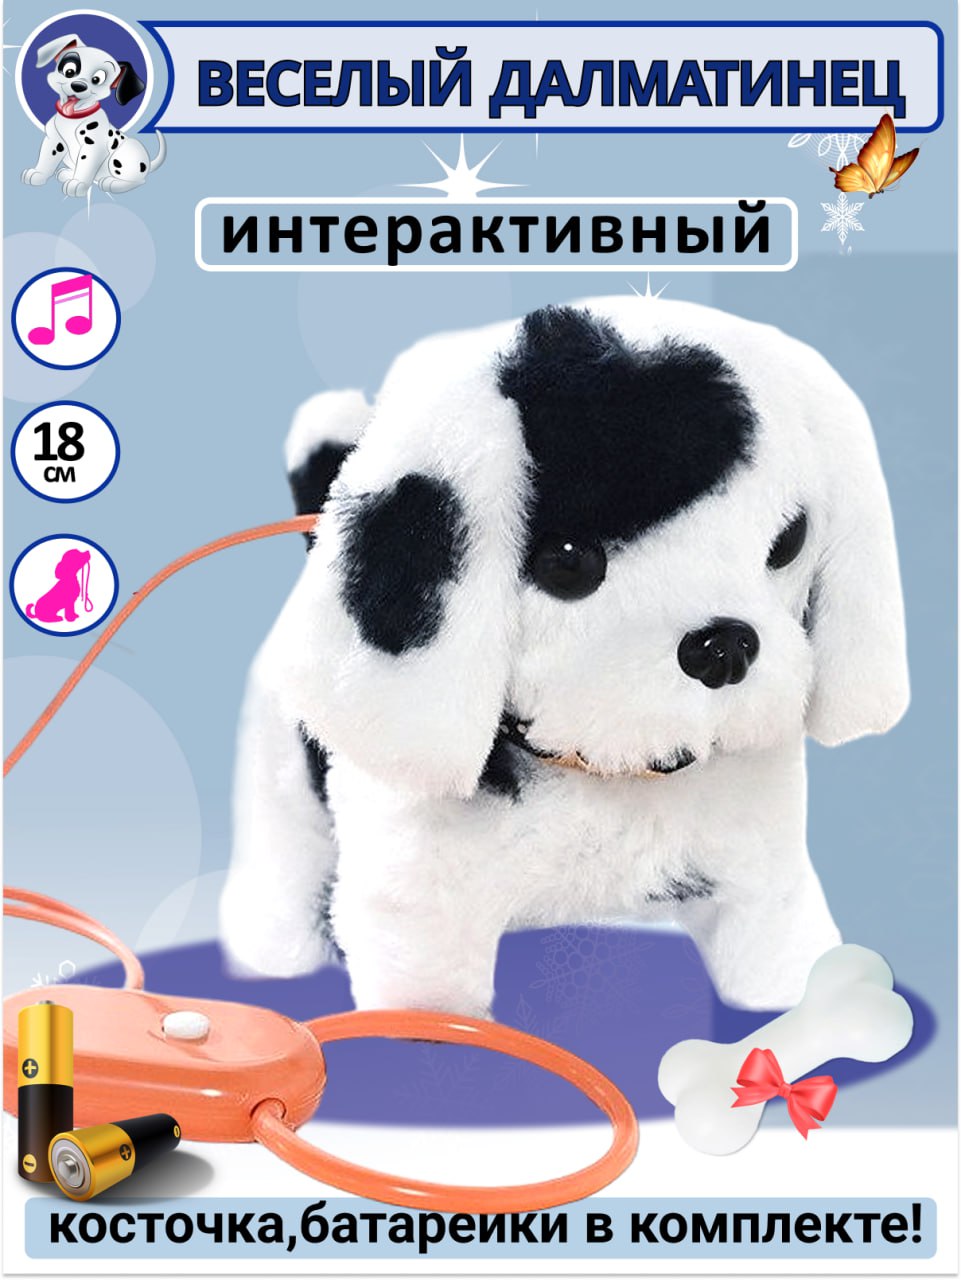 Интерактивная игрушка мягкая FAVORITSTAR DESIGN Собака долматинец с поводком и с косточкой - фото 1